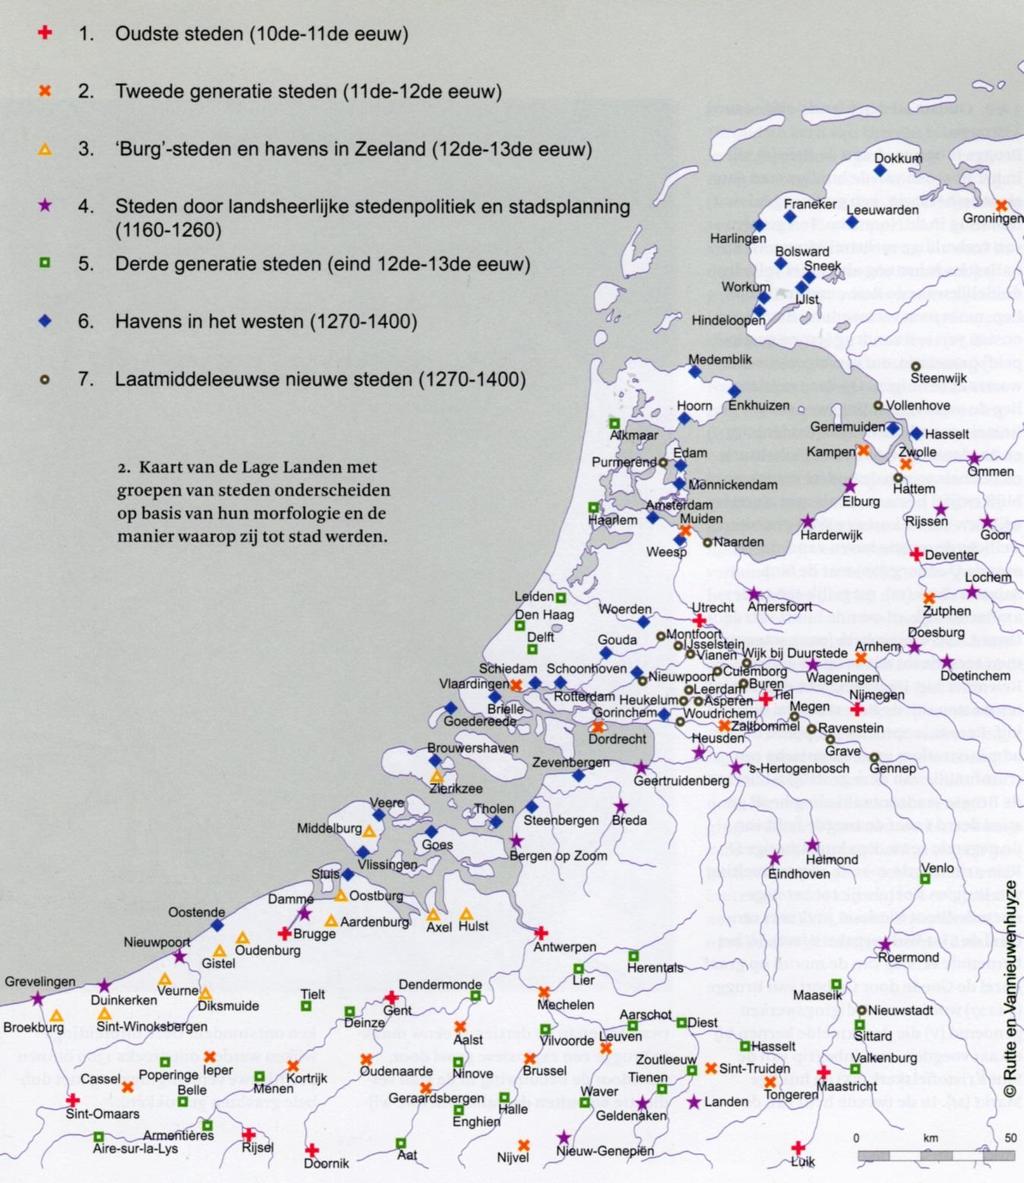 Bron: R. Rutte & B. Vannieuwenhuyze, Stadswording in de Lage Landen van de tiende tot de vijftiende eeuw.